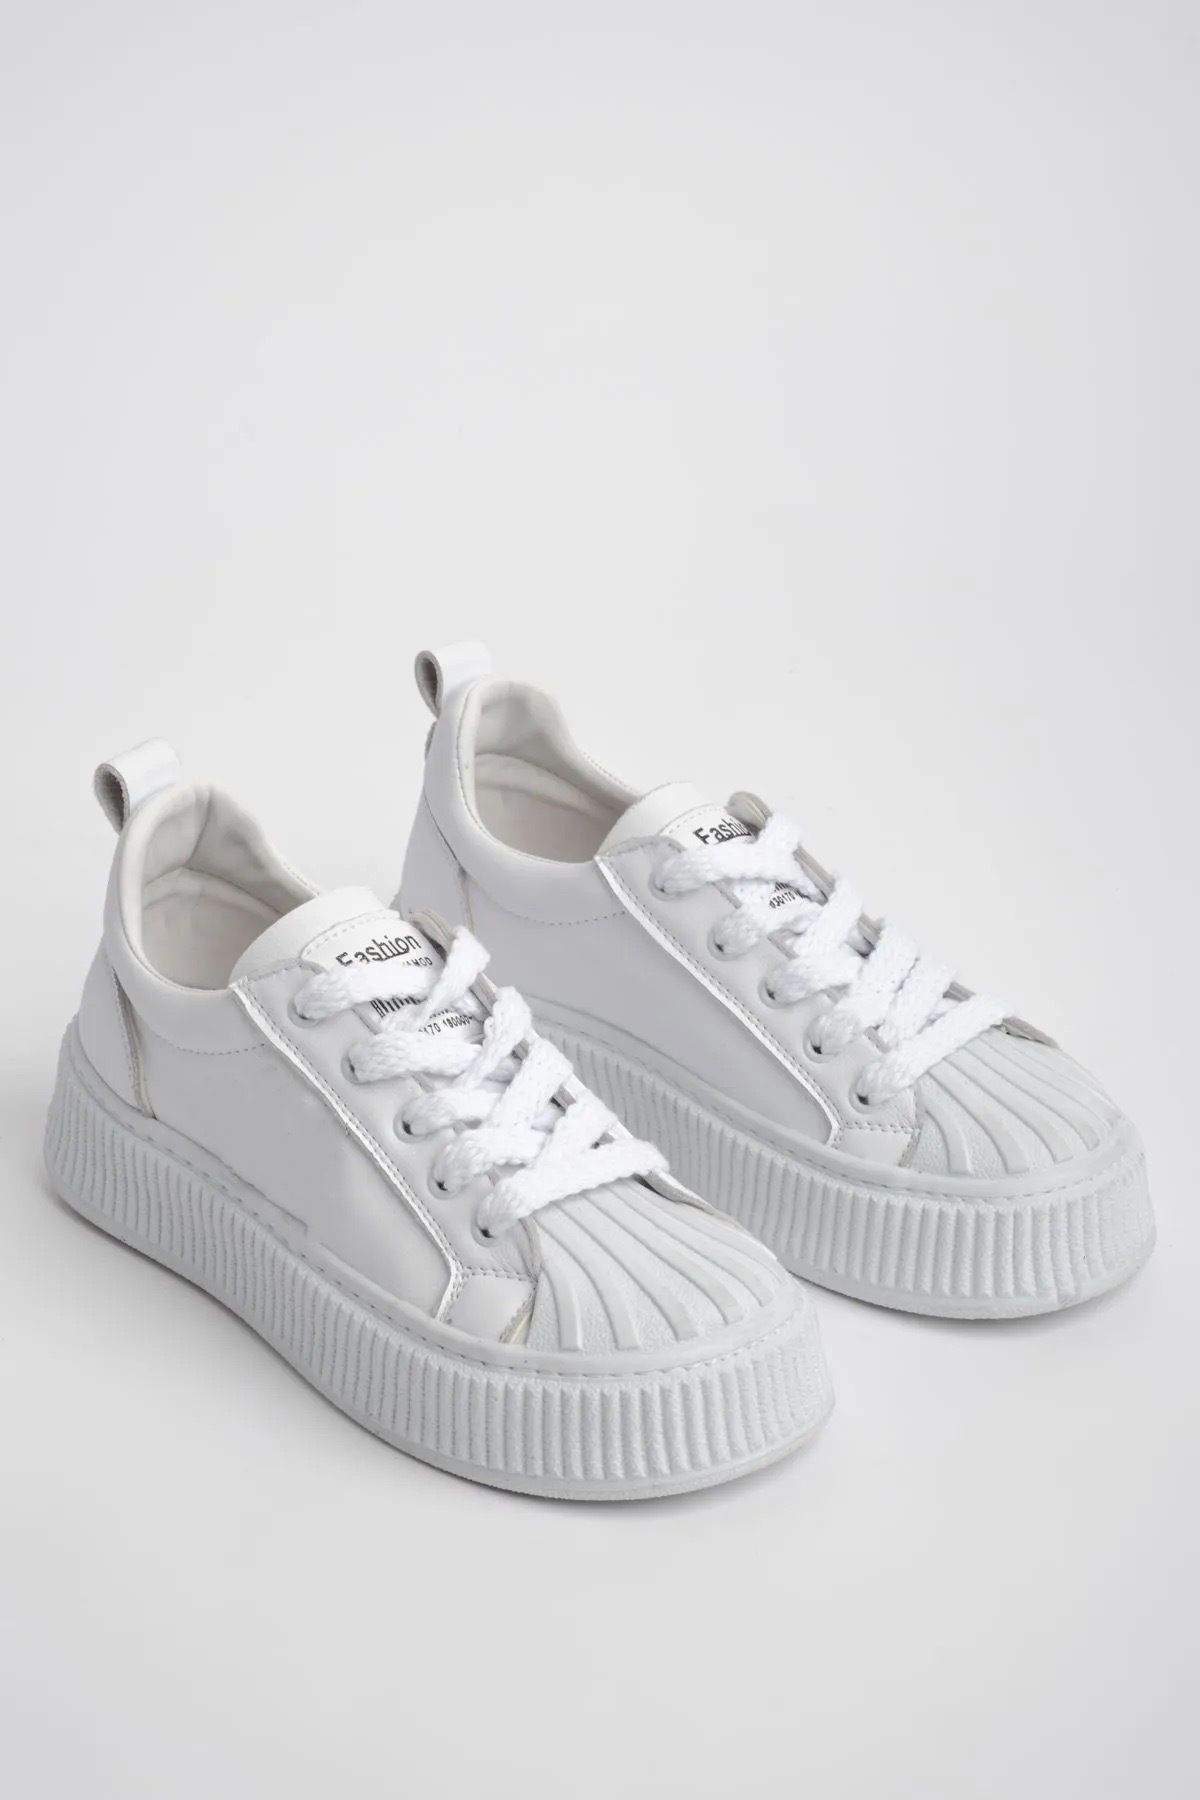 Anıl Ayakkabı Diva Kadın Beyaz Payetli Patchli Tabanlı Sneakers Günlük Spor Ayakkabı